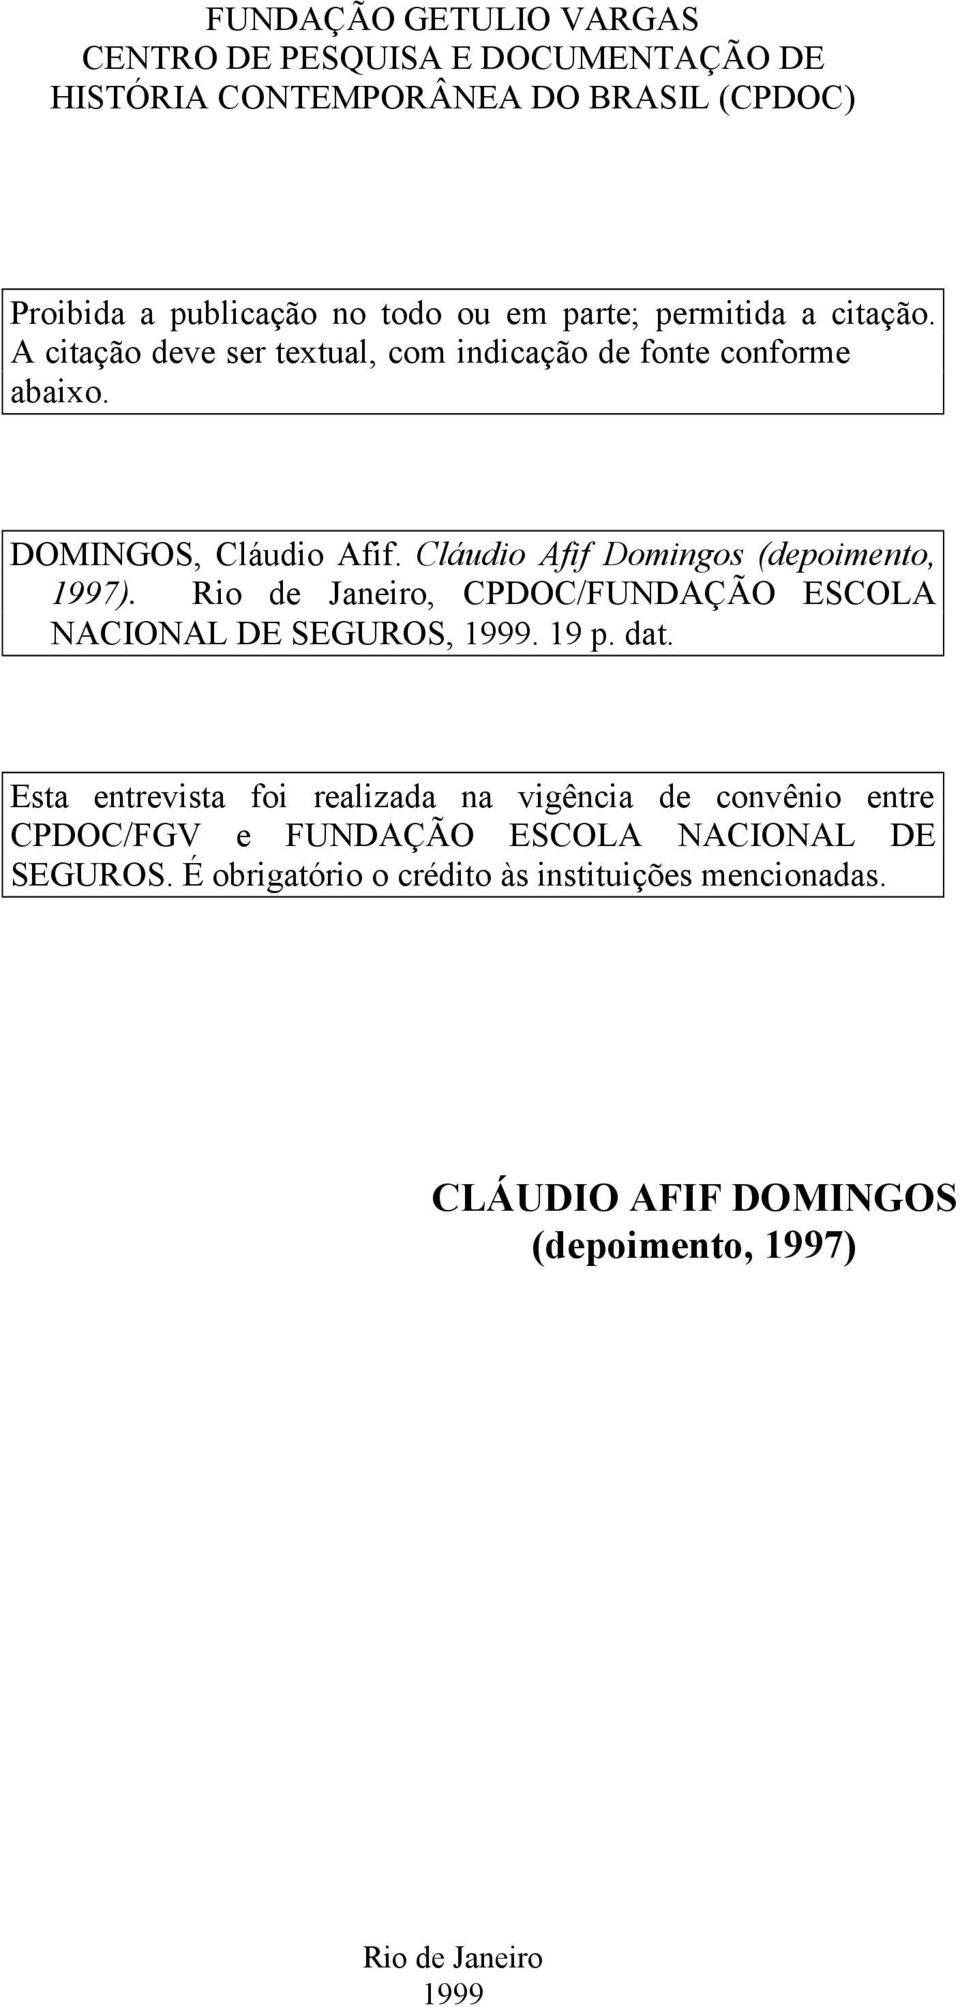 Rio de Janeiro, CPDOC/FUNDAÇÃO ESCOLA NACIONAL DE SEGUROS, 1999. 19 p. dat.